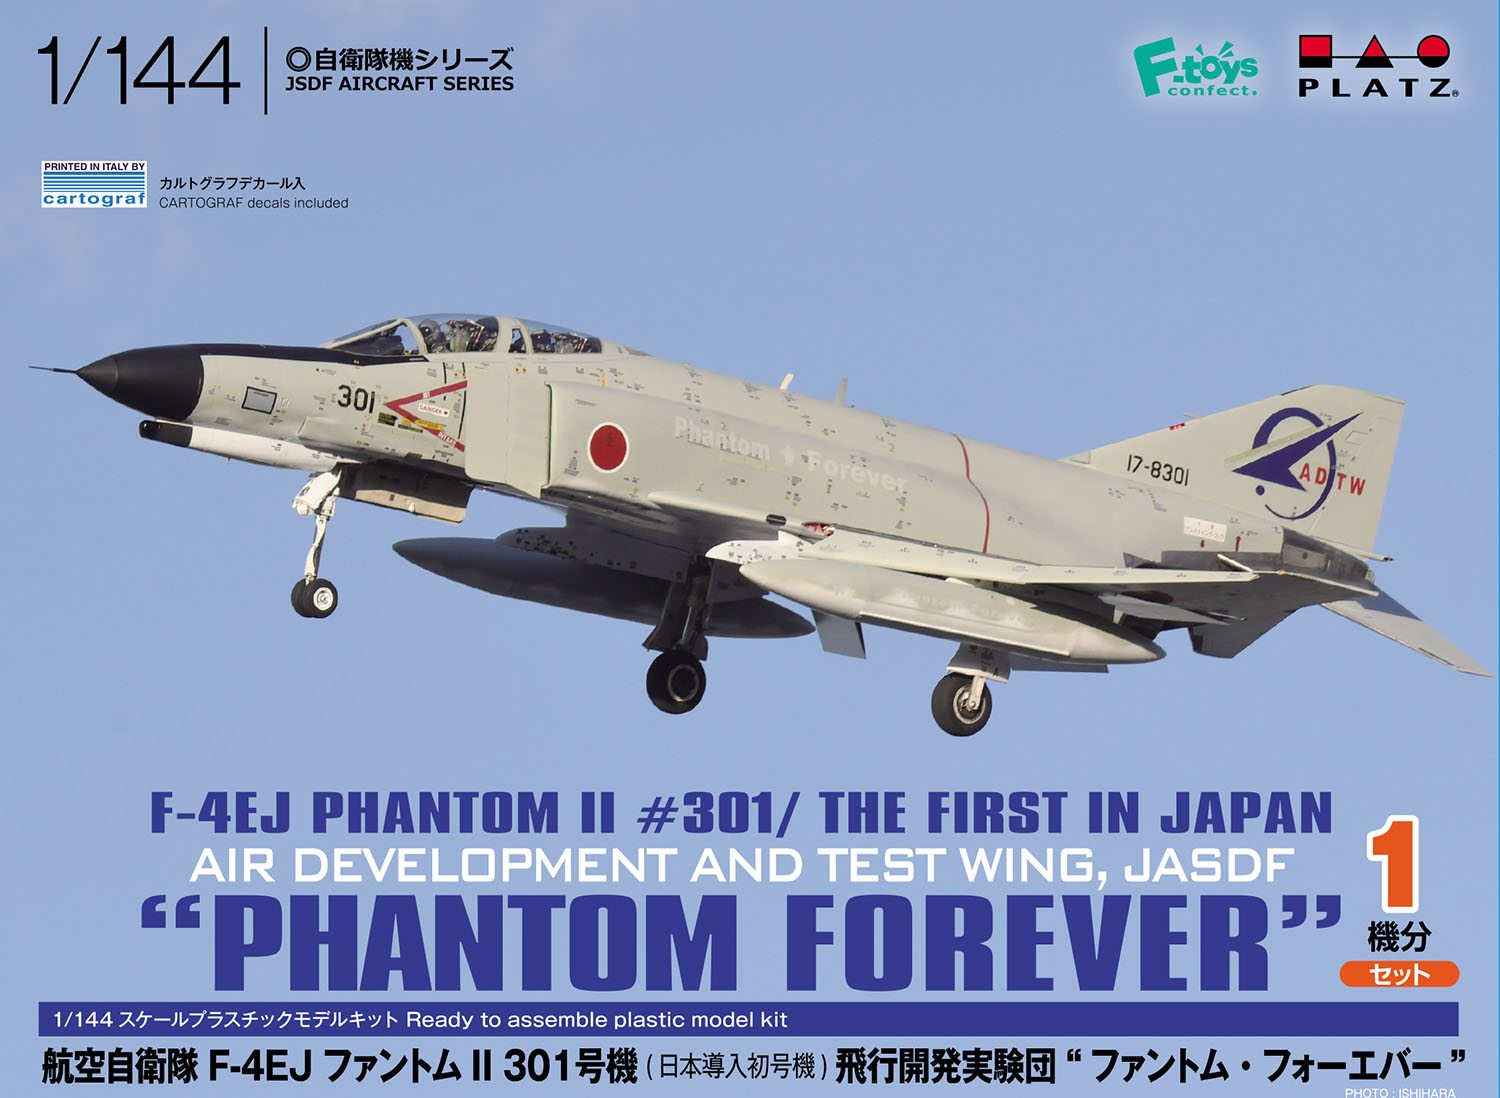 1/144 航空自衛隊 F-4EJ ファントムII 301号機(日本導入初号機) 飛行開発実験団 "ファントム･フォーエバー"